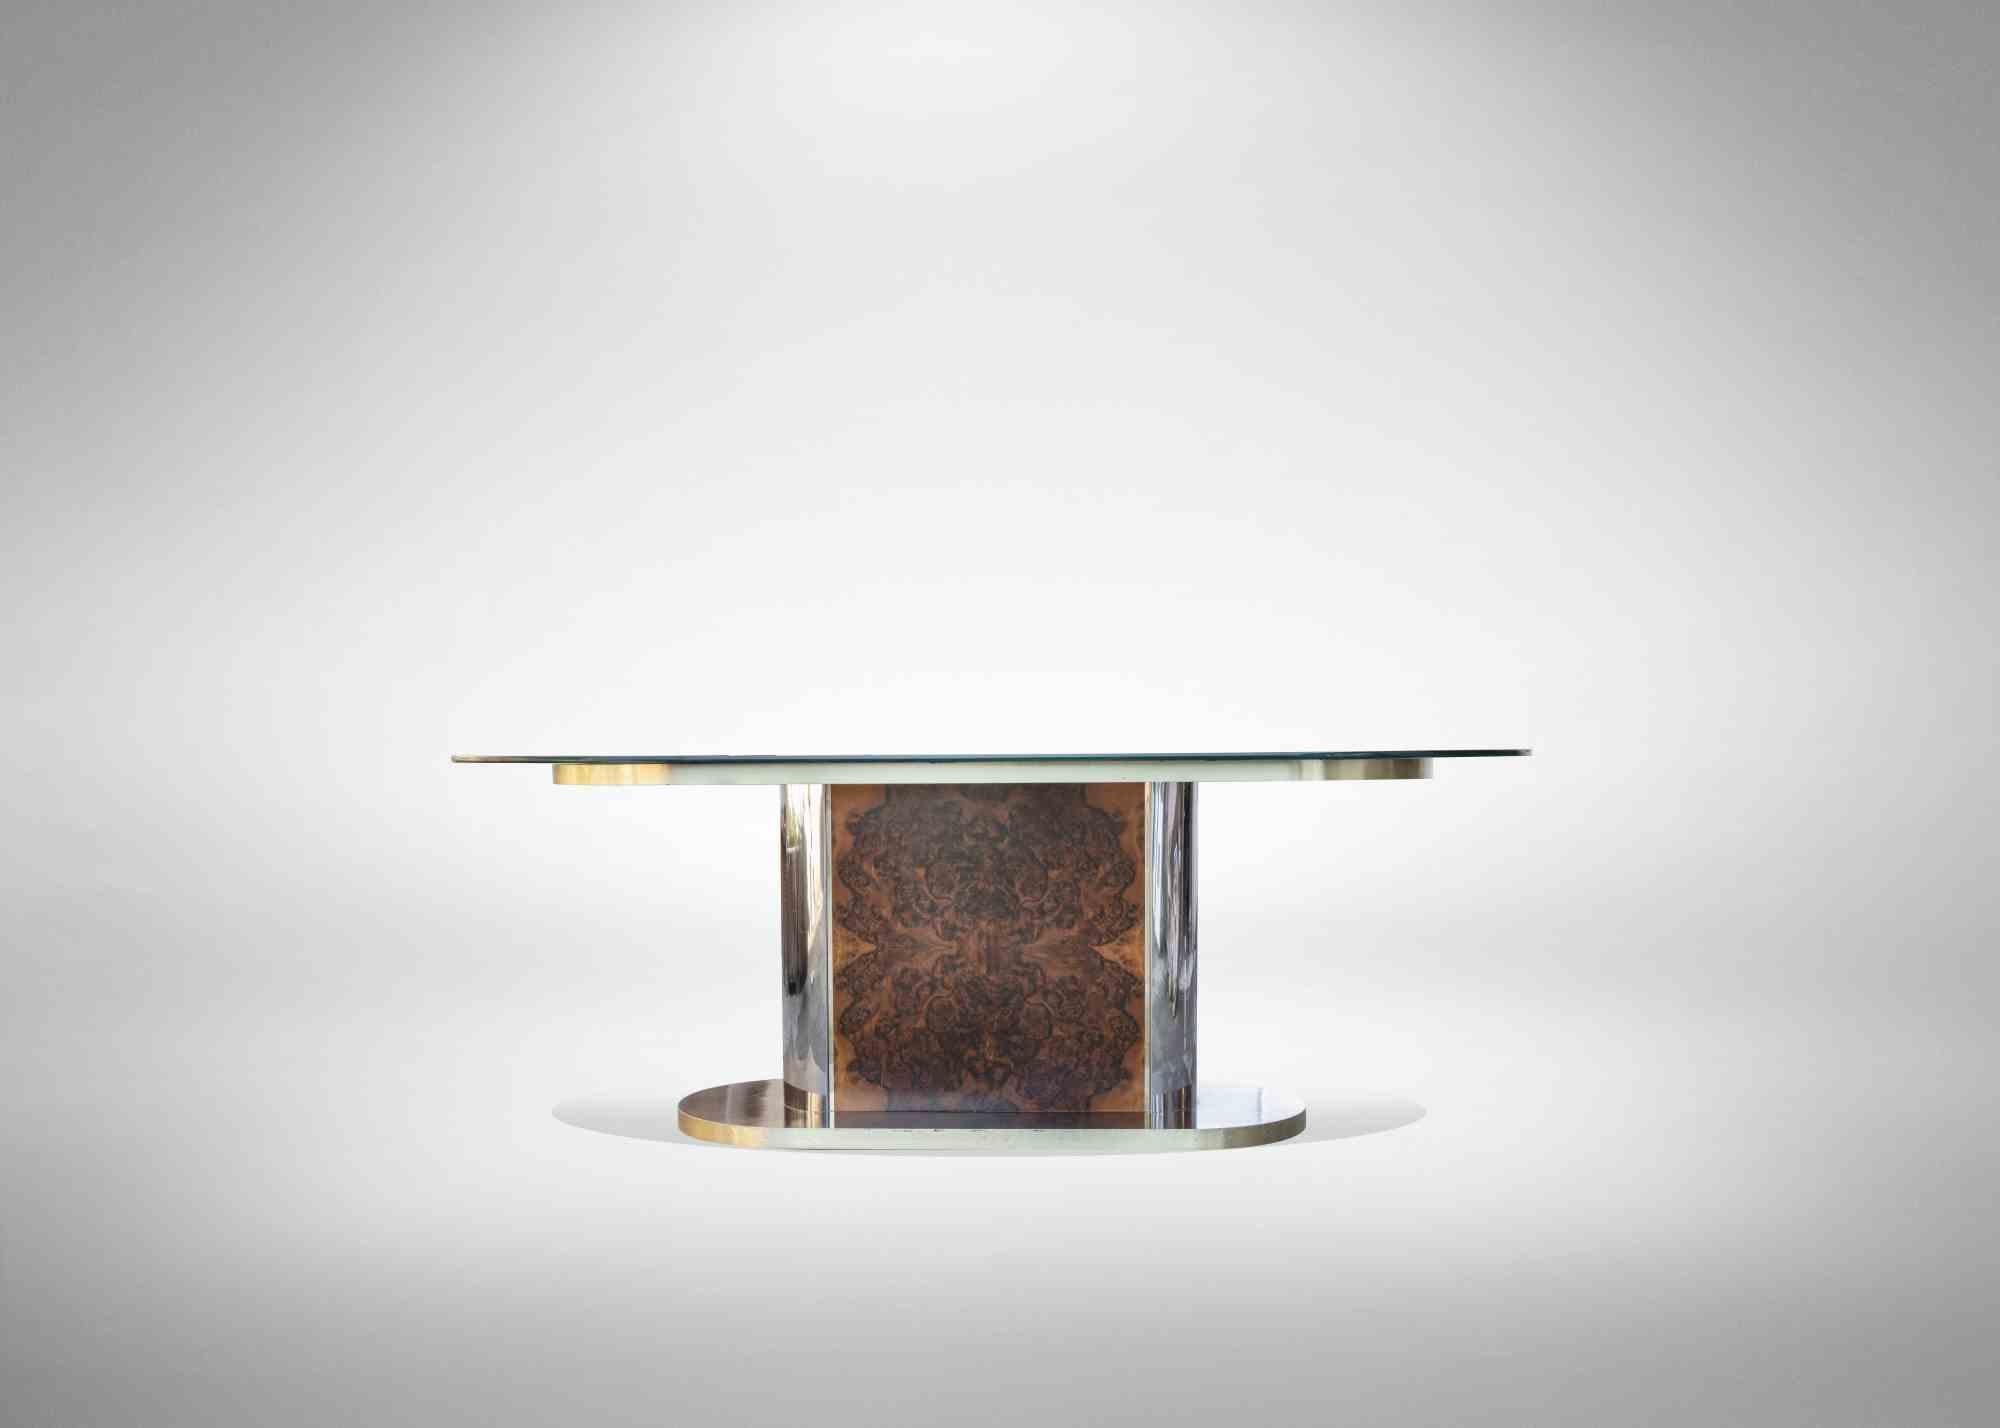 Vintage Tisch italienische Herstellung 1970er Jahre, im Stil von Willy Rizzo. Messing, Bruyère, Glas und verspiegeltes Glas.

100 Breite 200 Länge 70 Höhe.

Sehr guter Zustand.